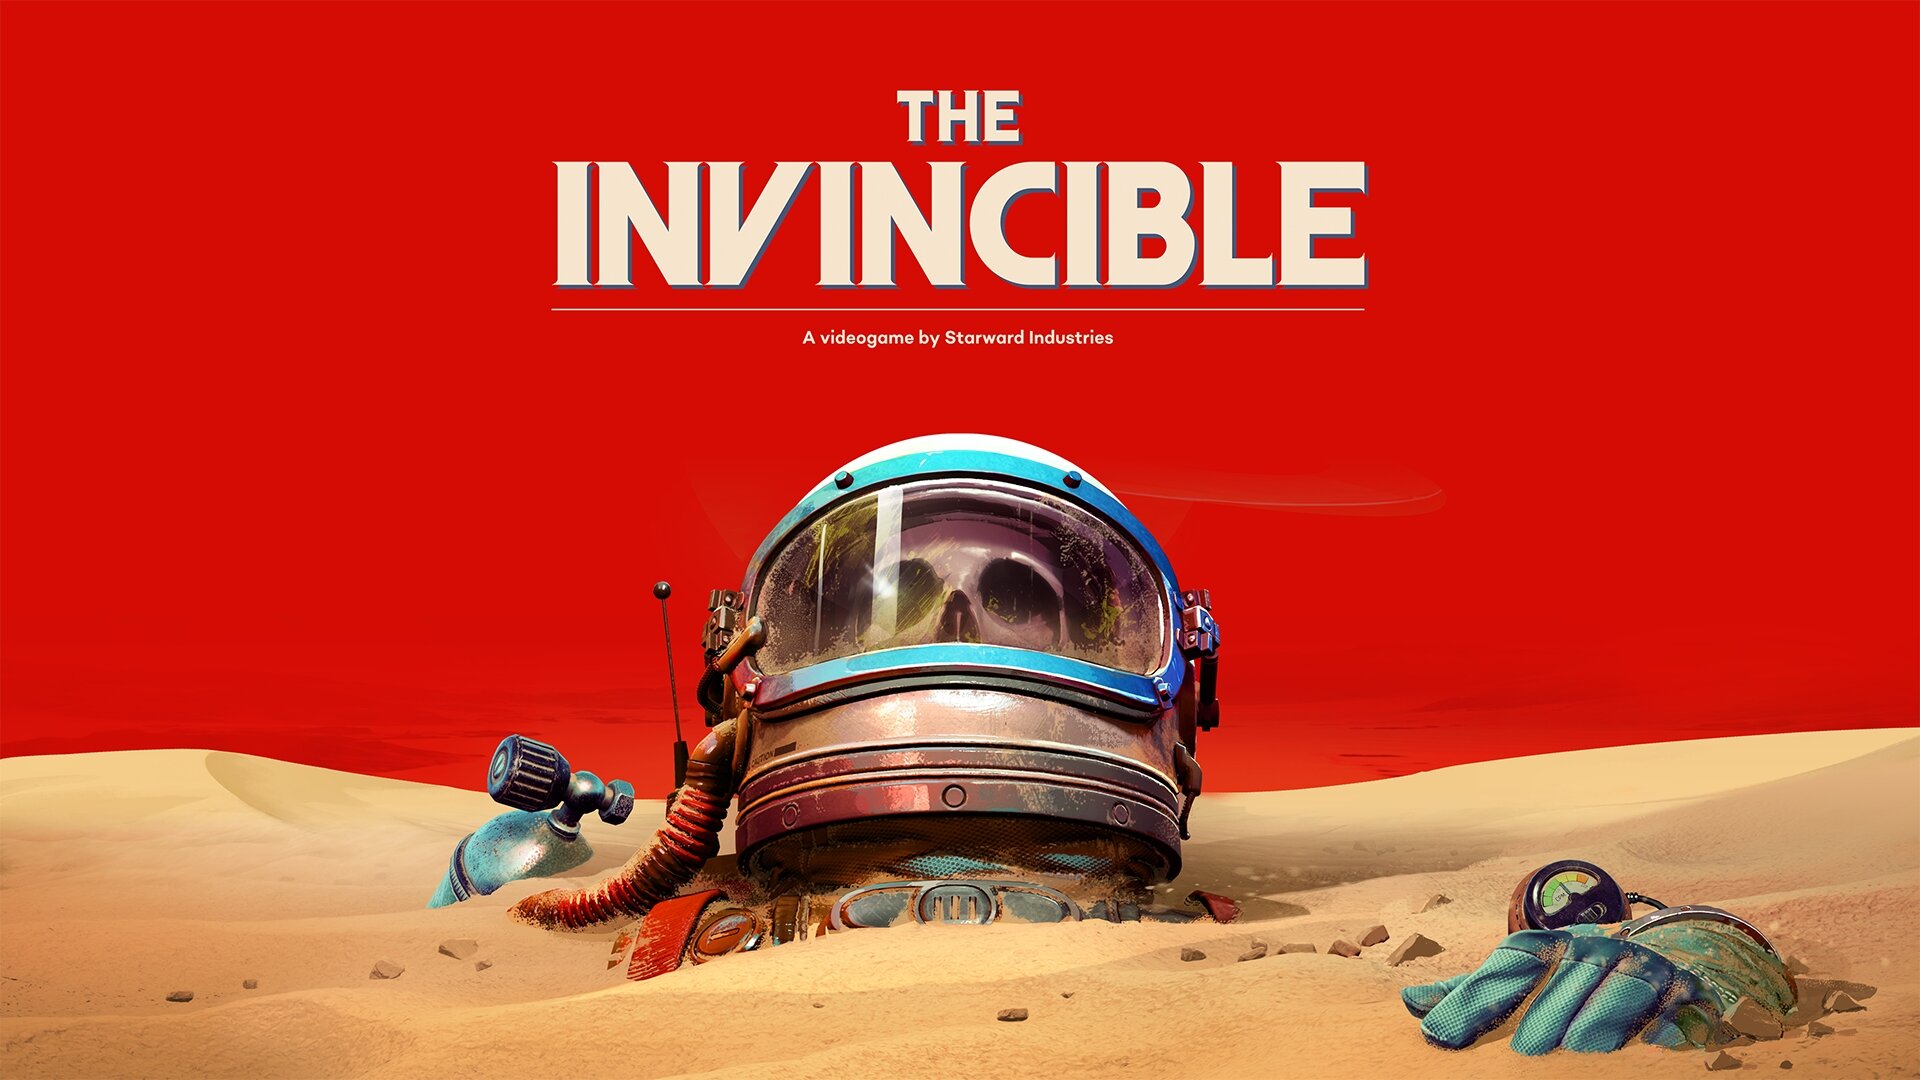 Futurystyczna gra przygodowa The Invincible ukaże się 6 listopada